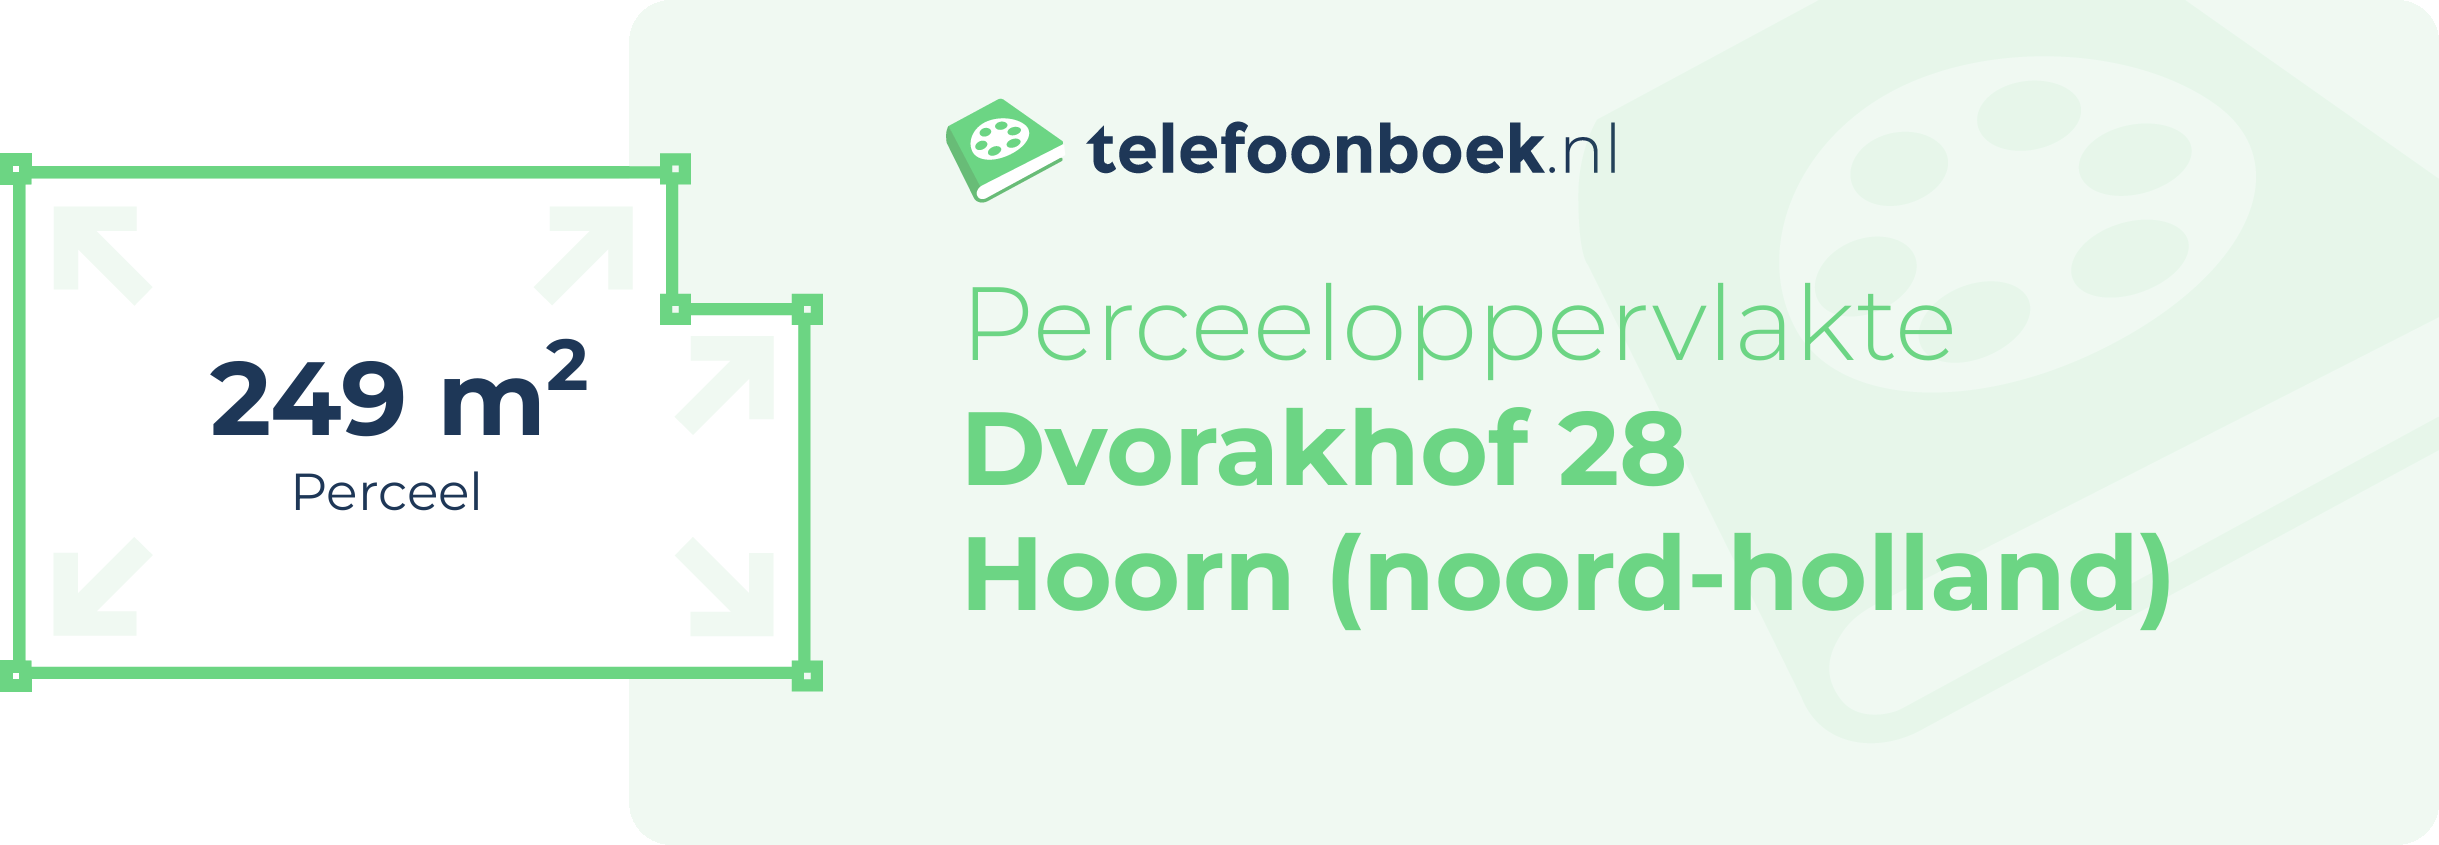 Perceeloppervlakte Dvorakhof 28 Hoorn (Noord-Holland)